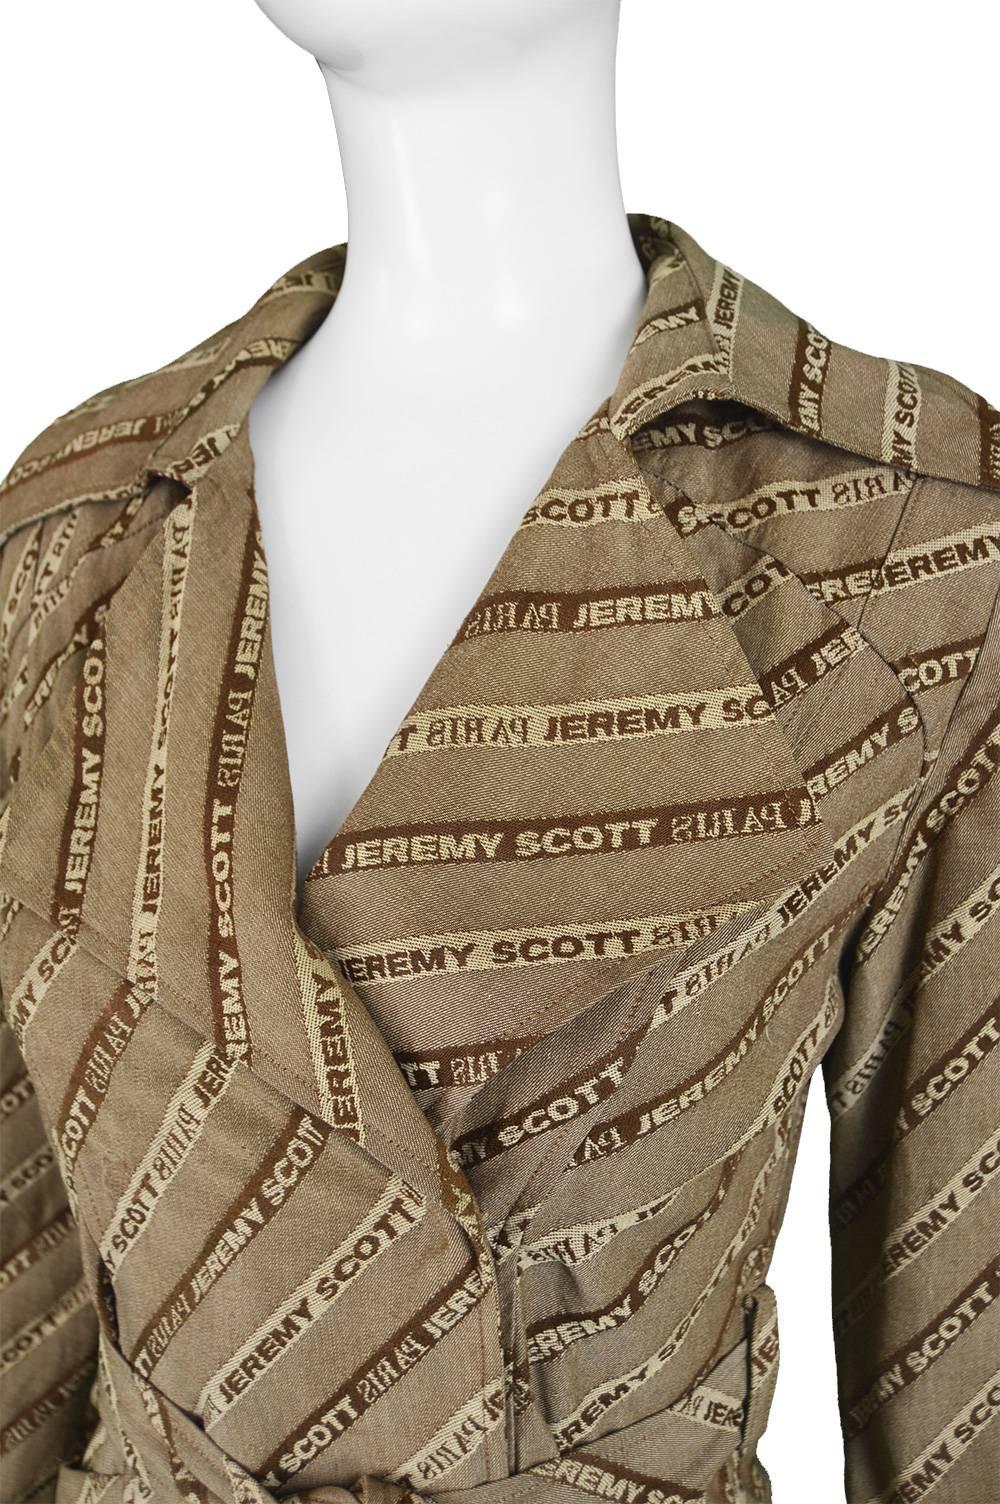 jeremy scott trench coat